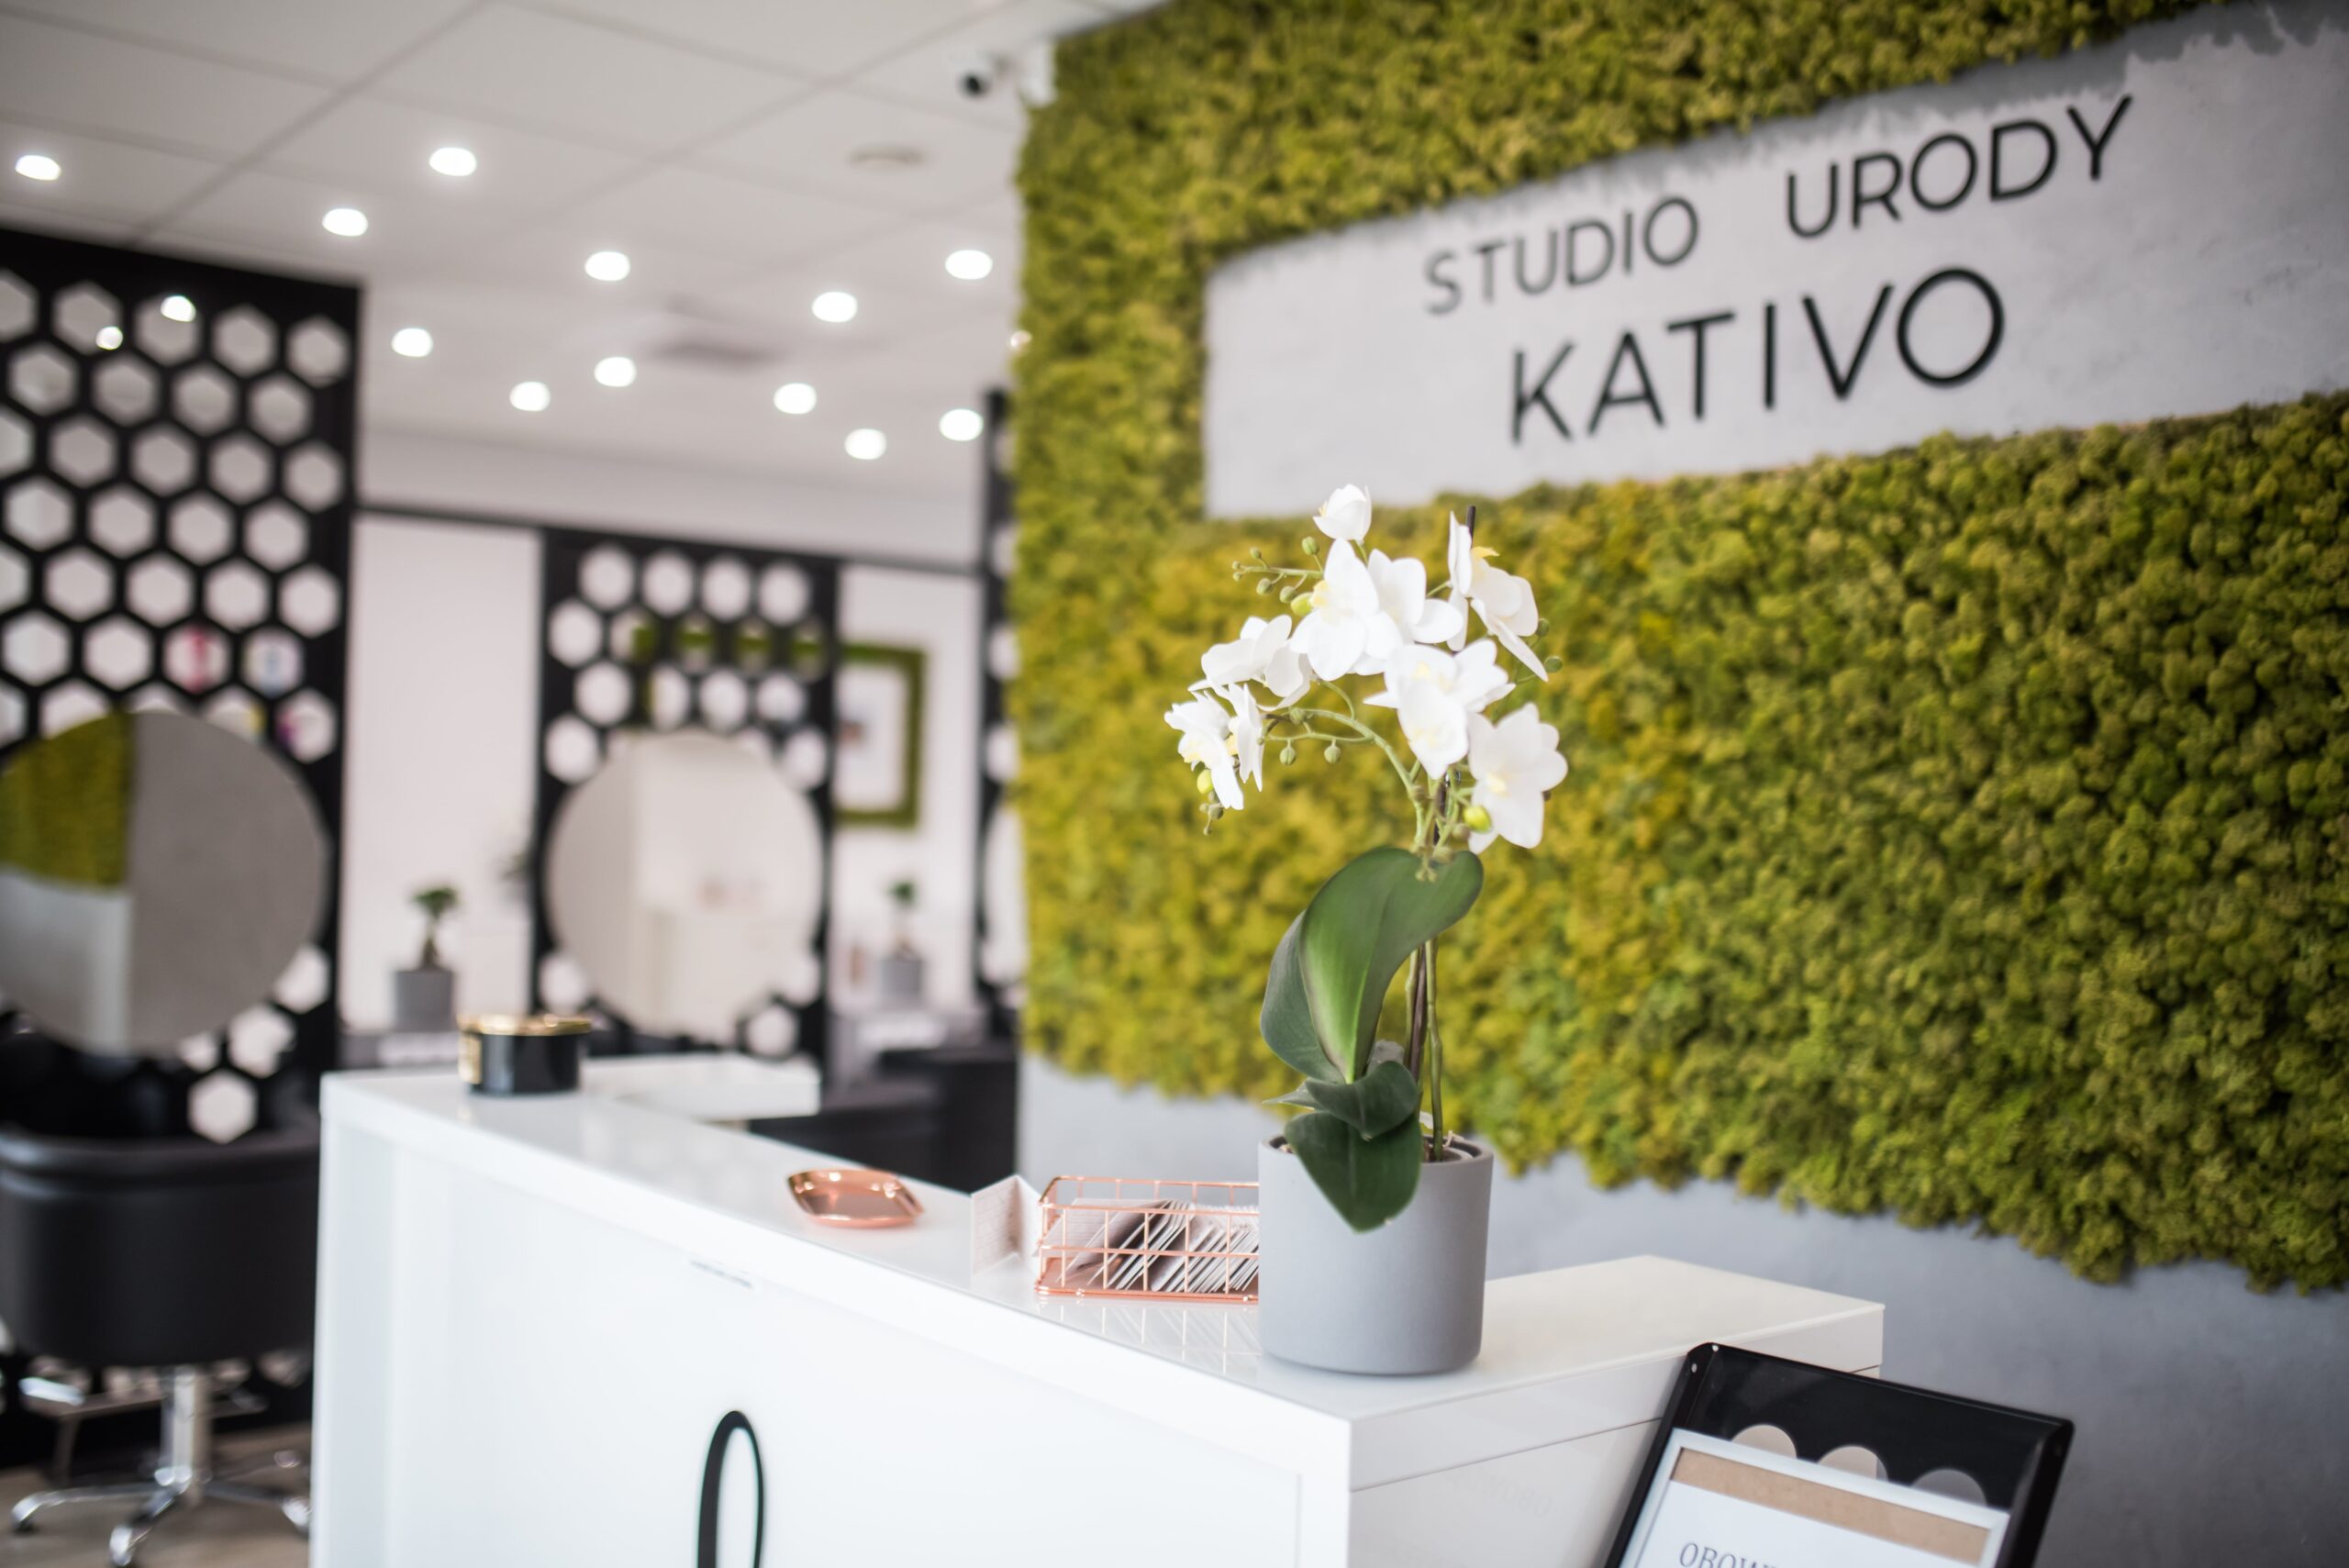 Stylizacja fryzur, zabiegi kosmetyczne, manicure, pedicure i strzyżenia barberskie w Studio Urody Kativo